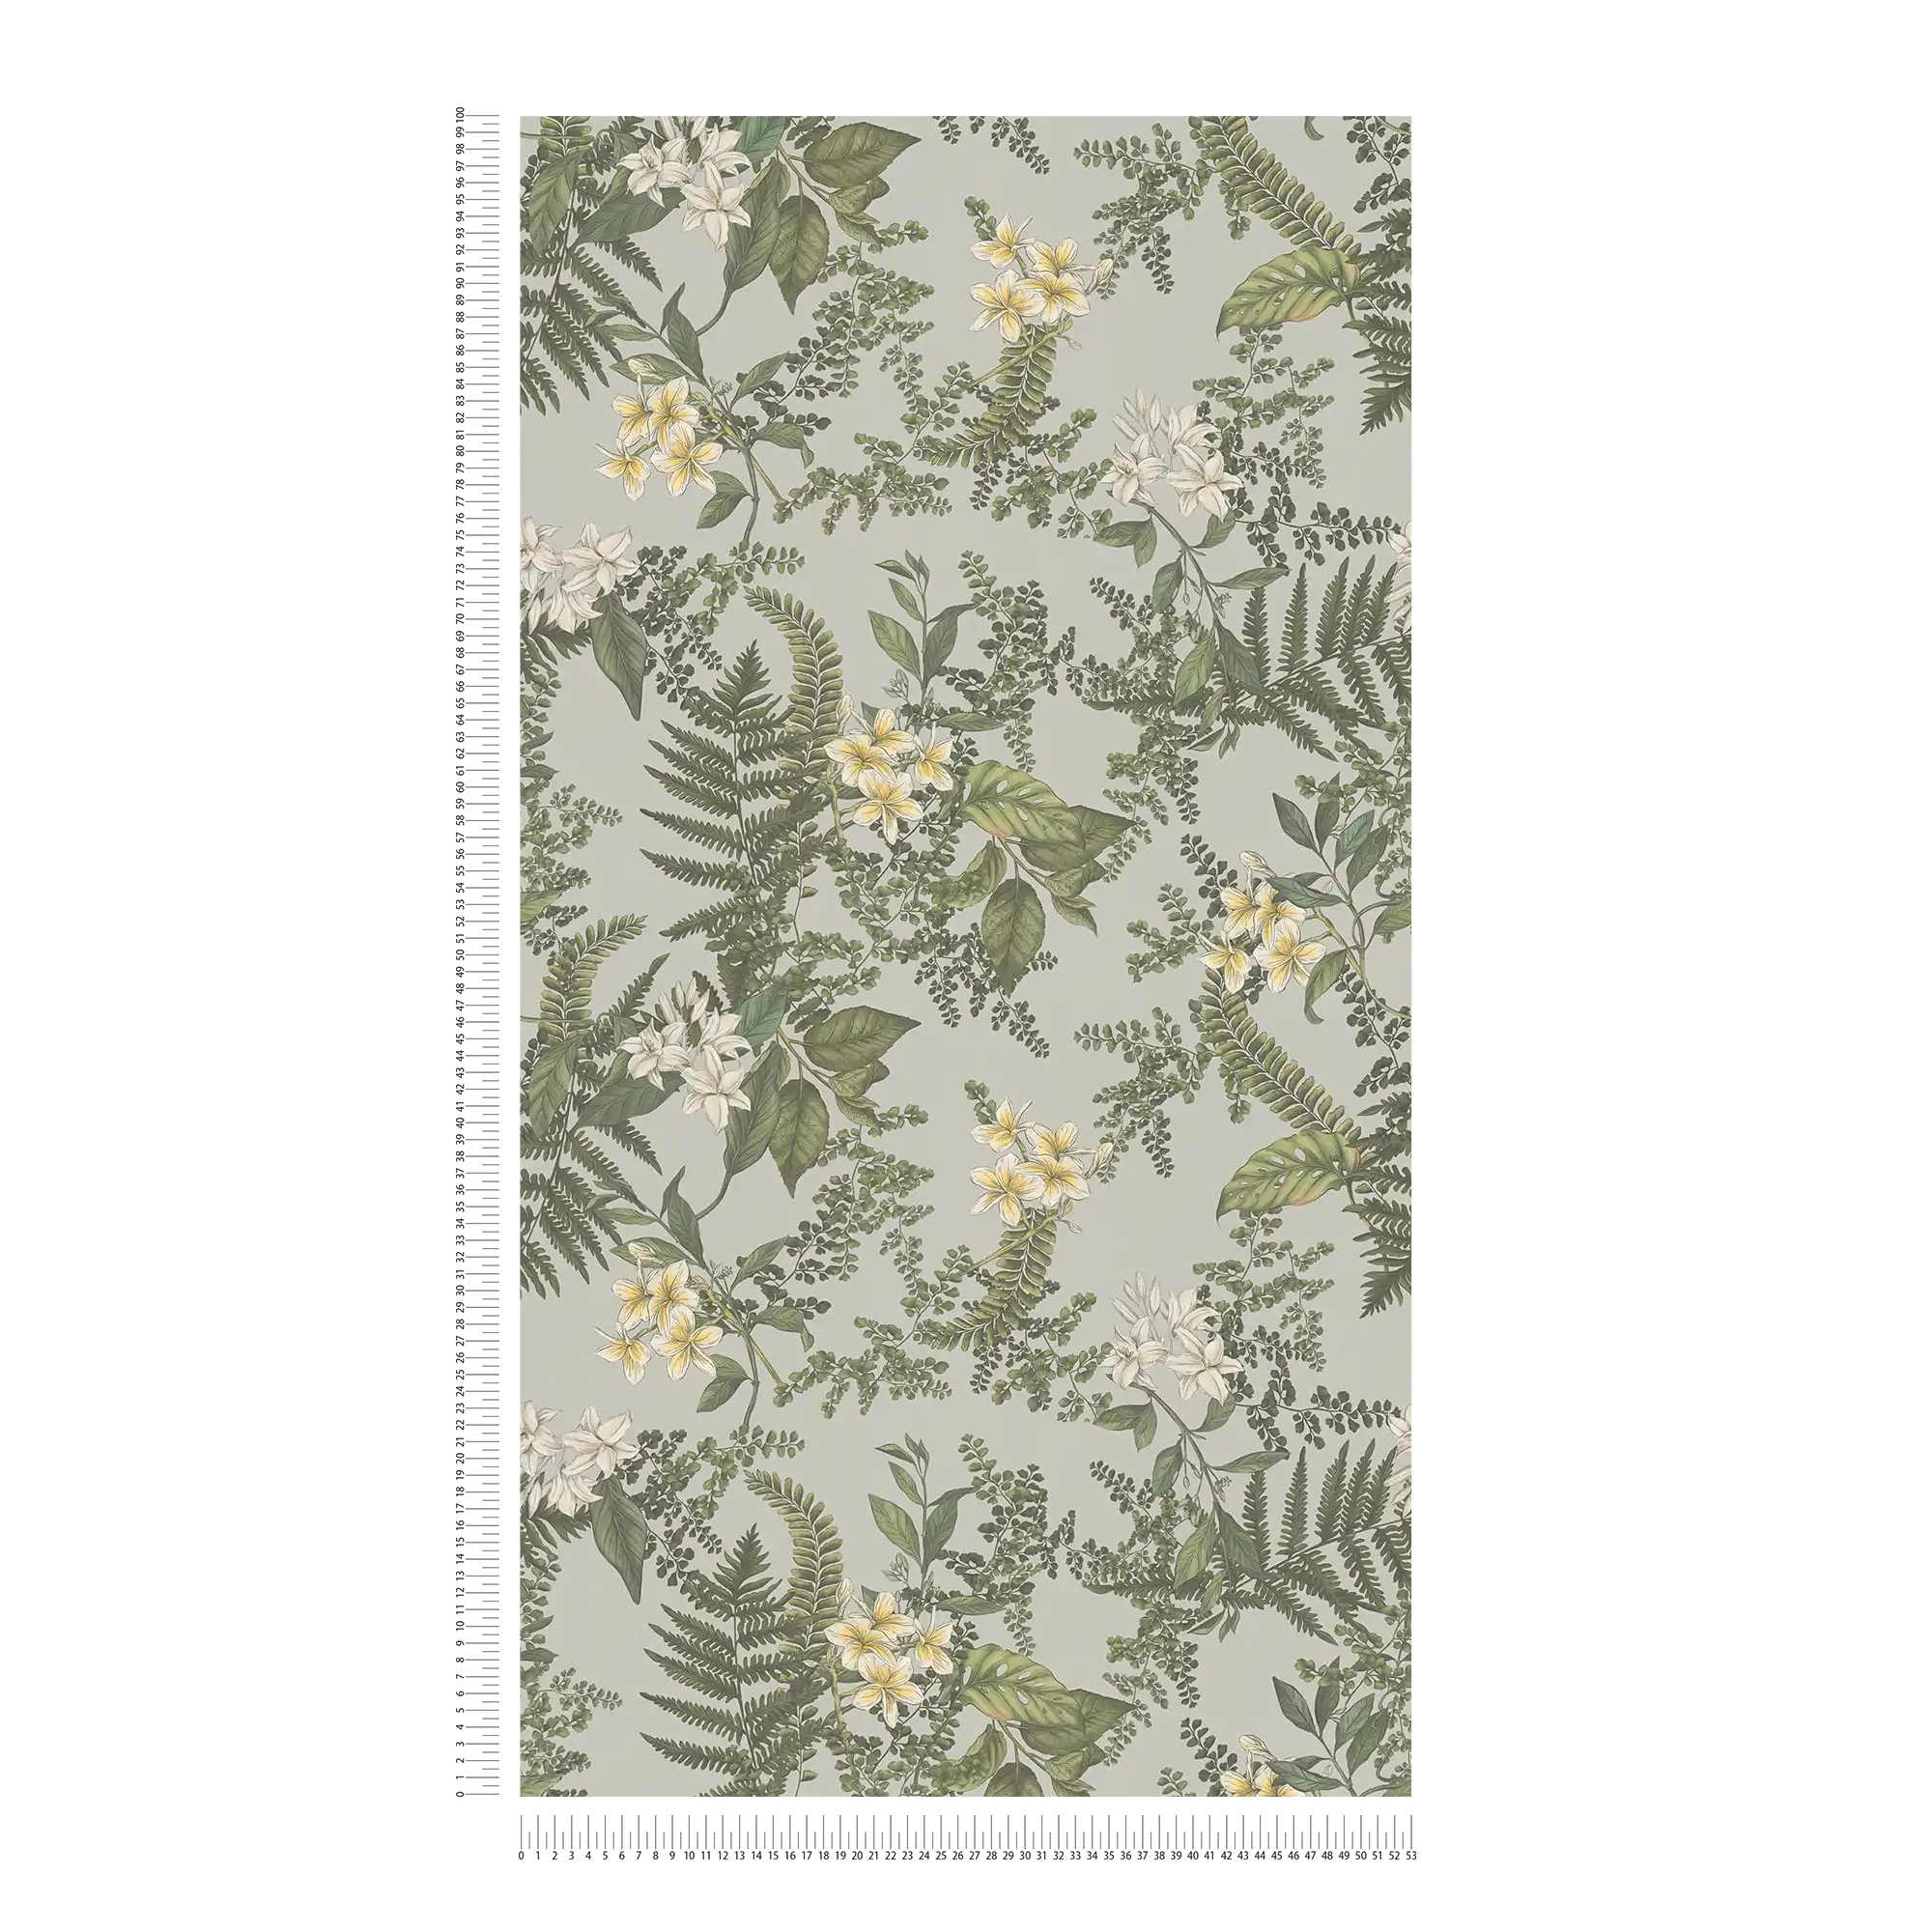             papier peint en papier moderne style floral avec fleurs & herbes structuré mat - gris, vert foncé, blanc
        